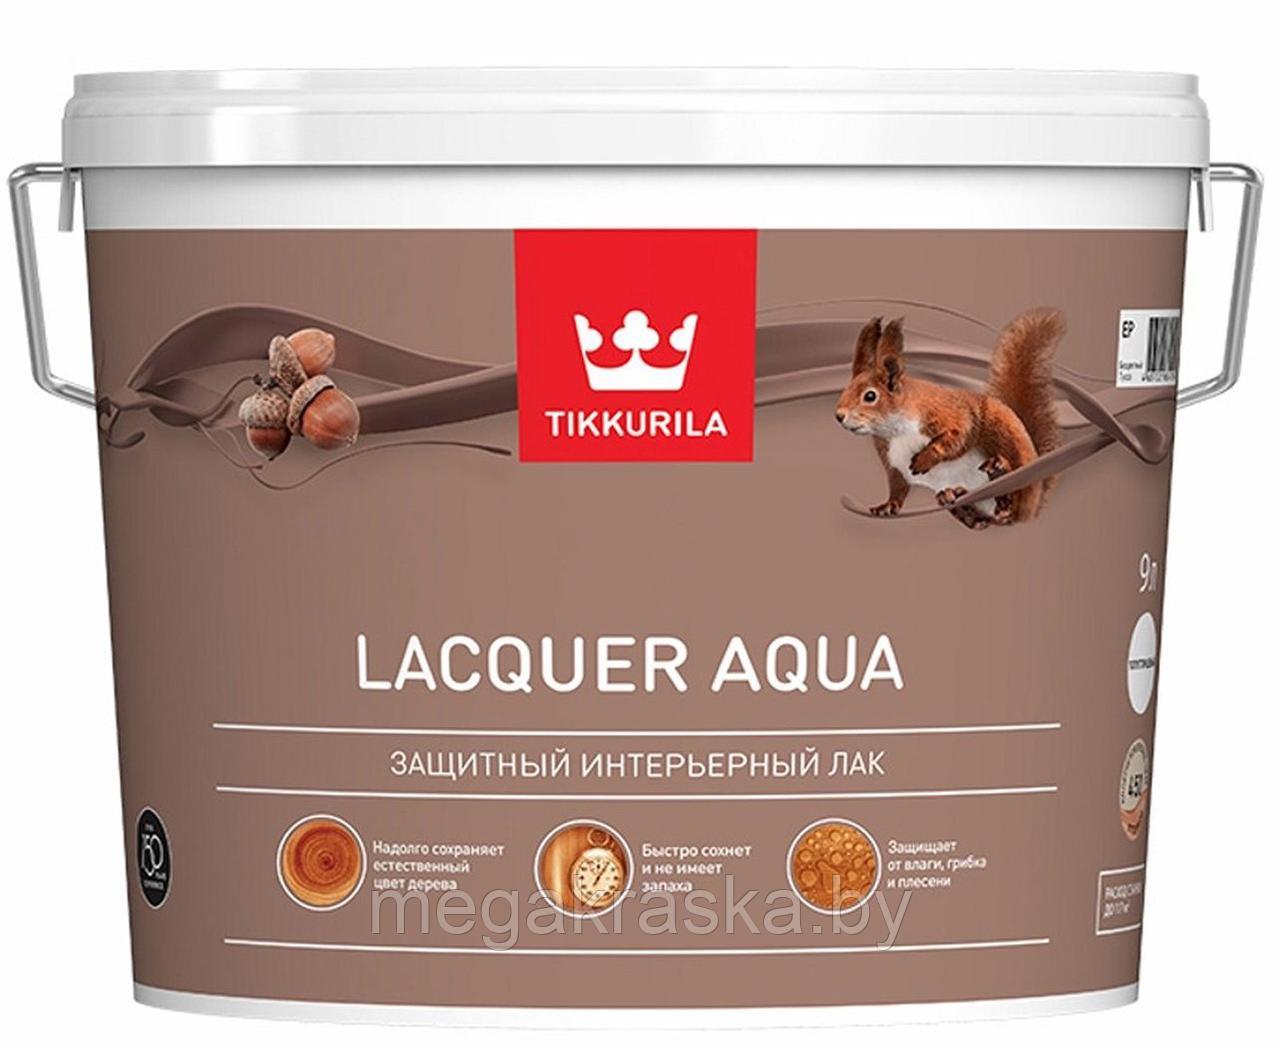 Tikkurila lacquer aqua - Лак аква интерьерный матовый 9л.